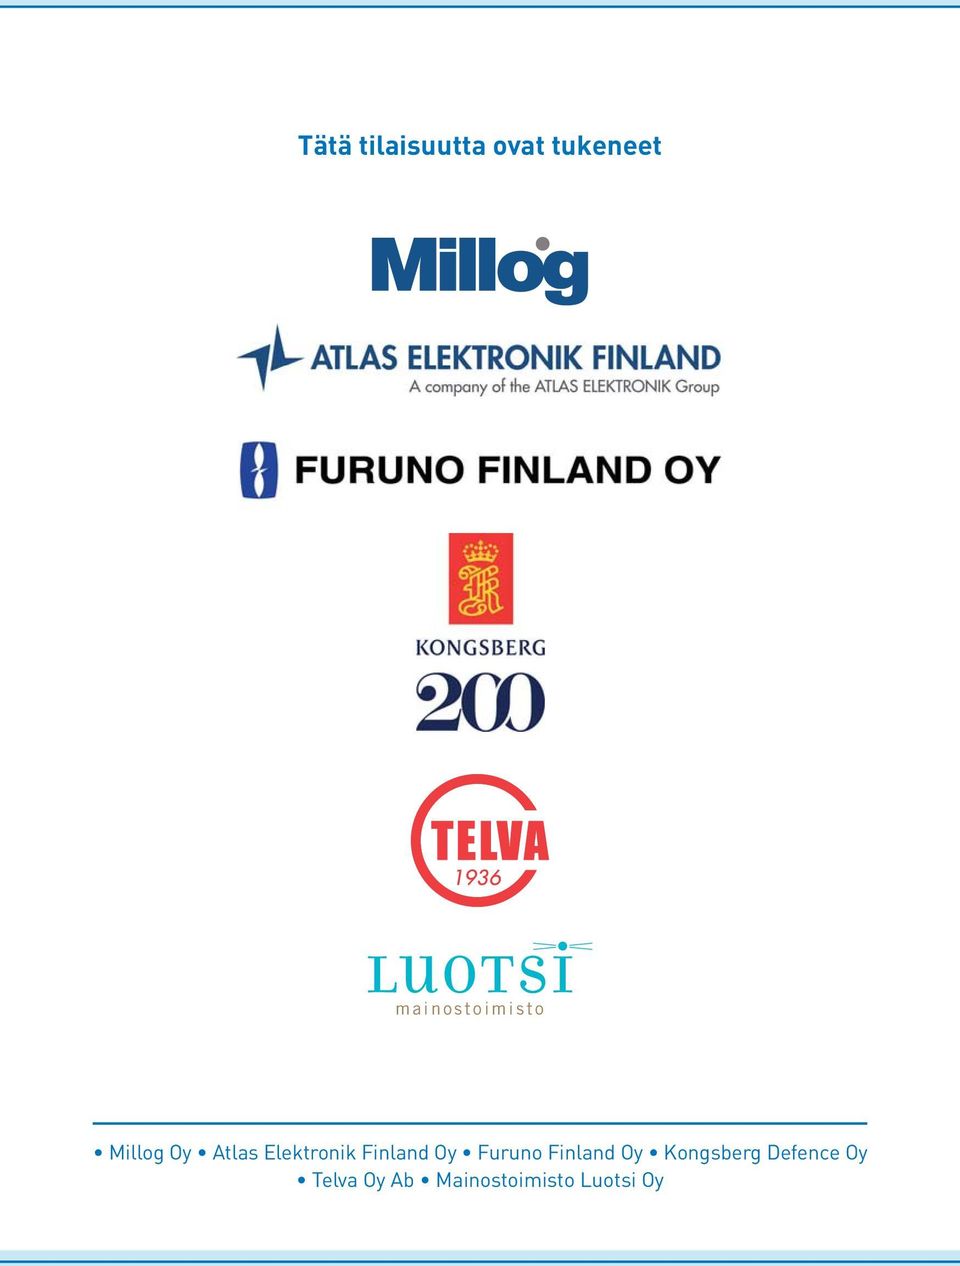 Elektronik Finland Oy Furuno Finland Oy